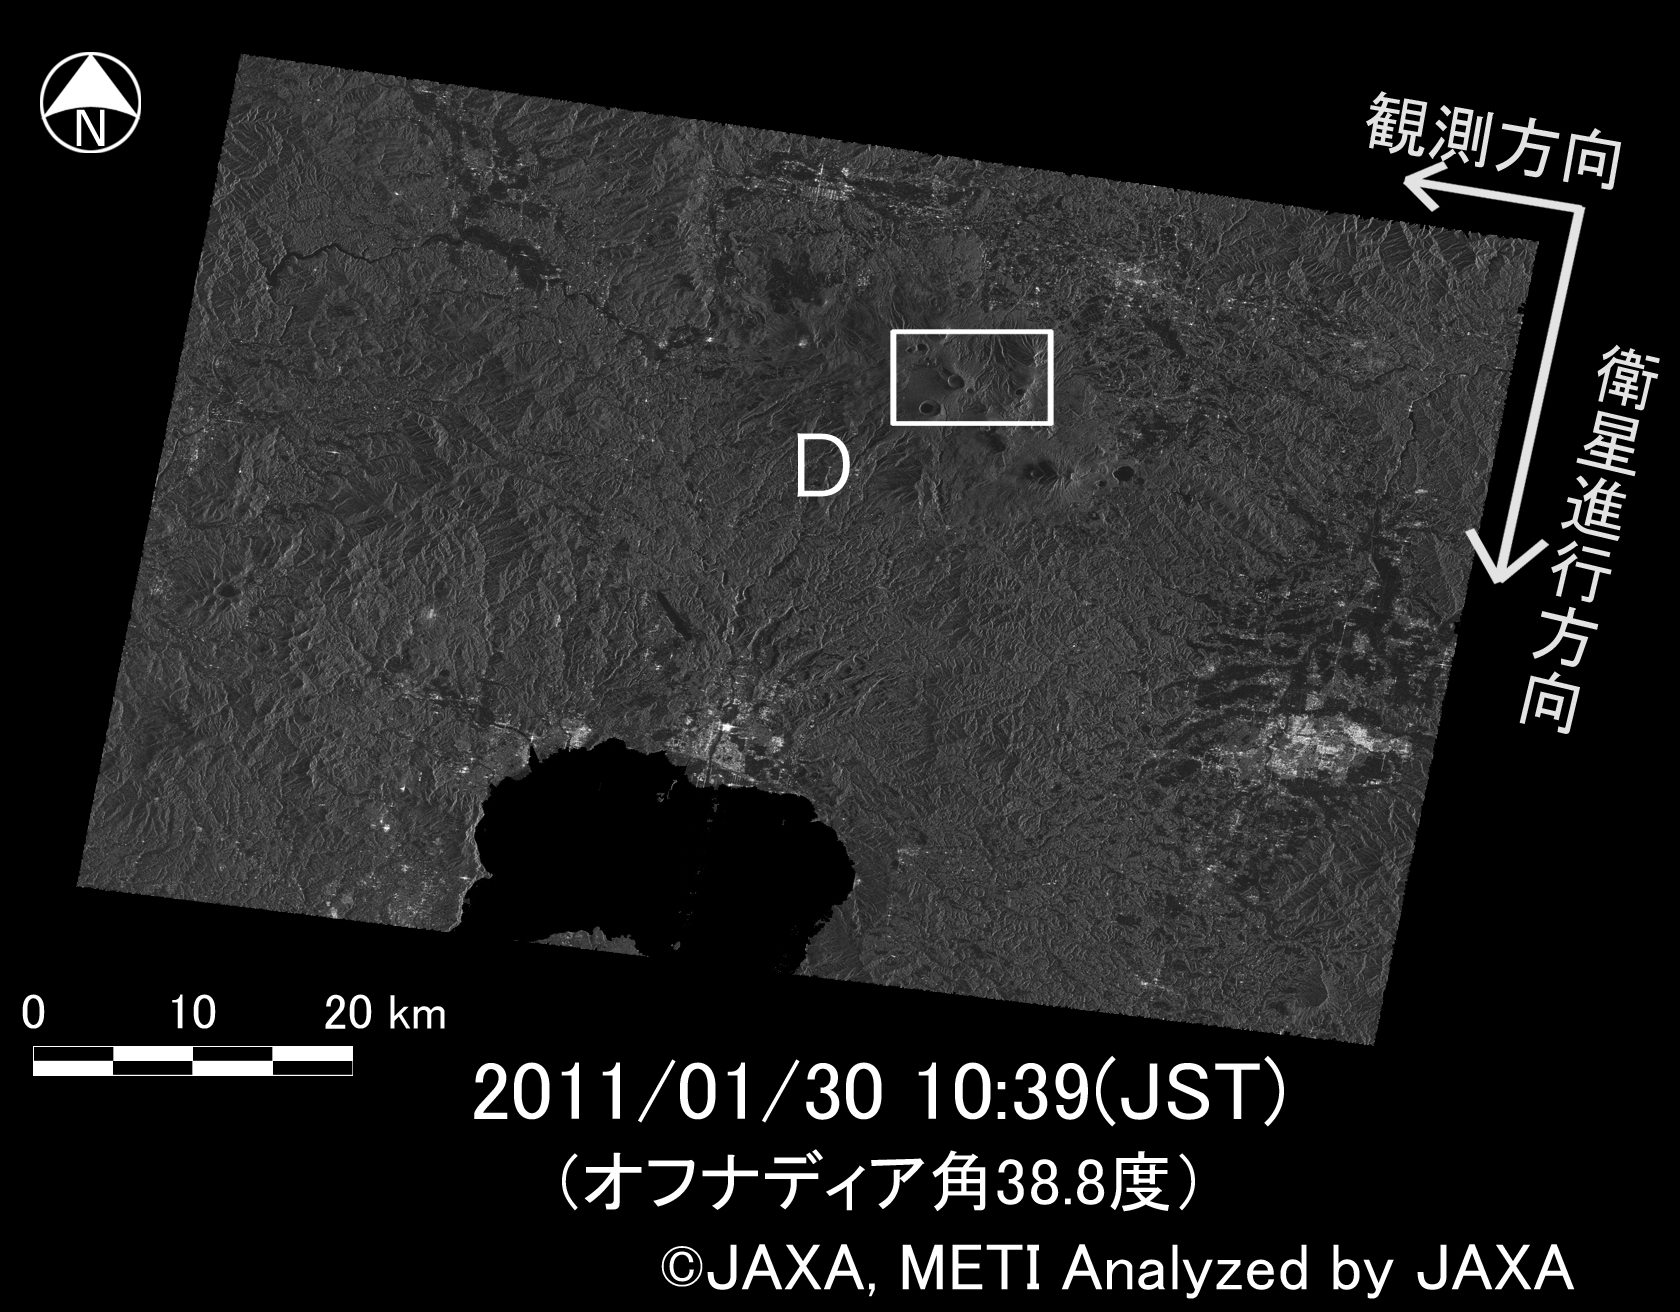 図2右下:2011年1月30日(噴火後)にPALSARで取得された新燃岳周辺の画像